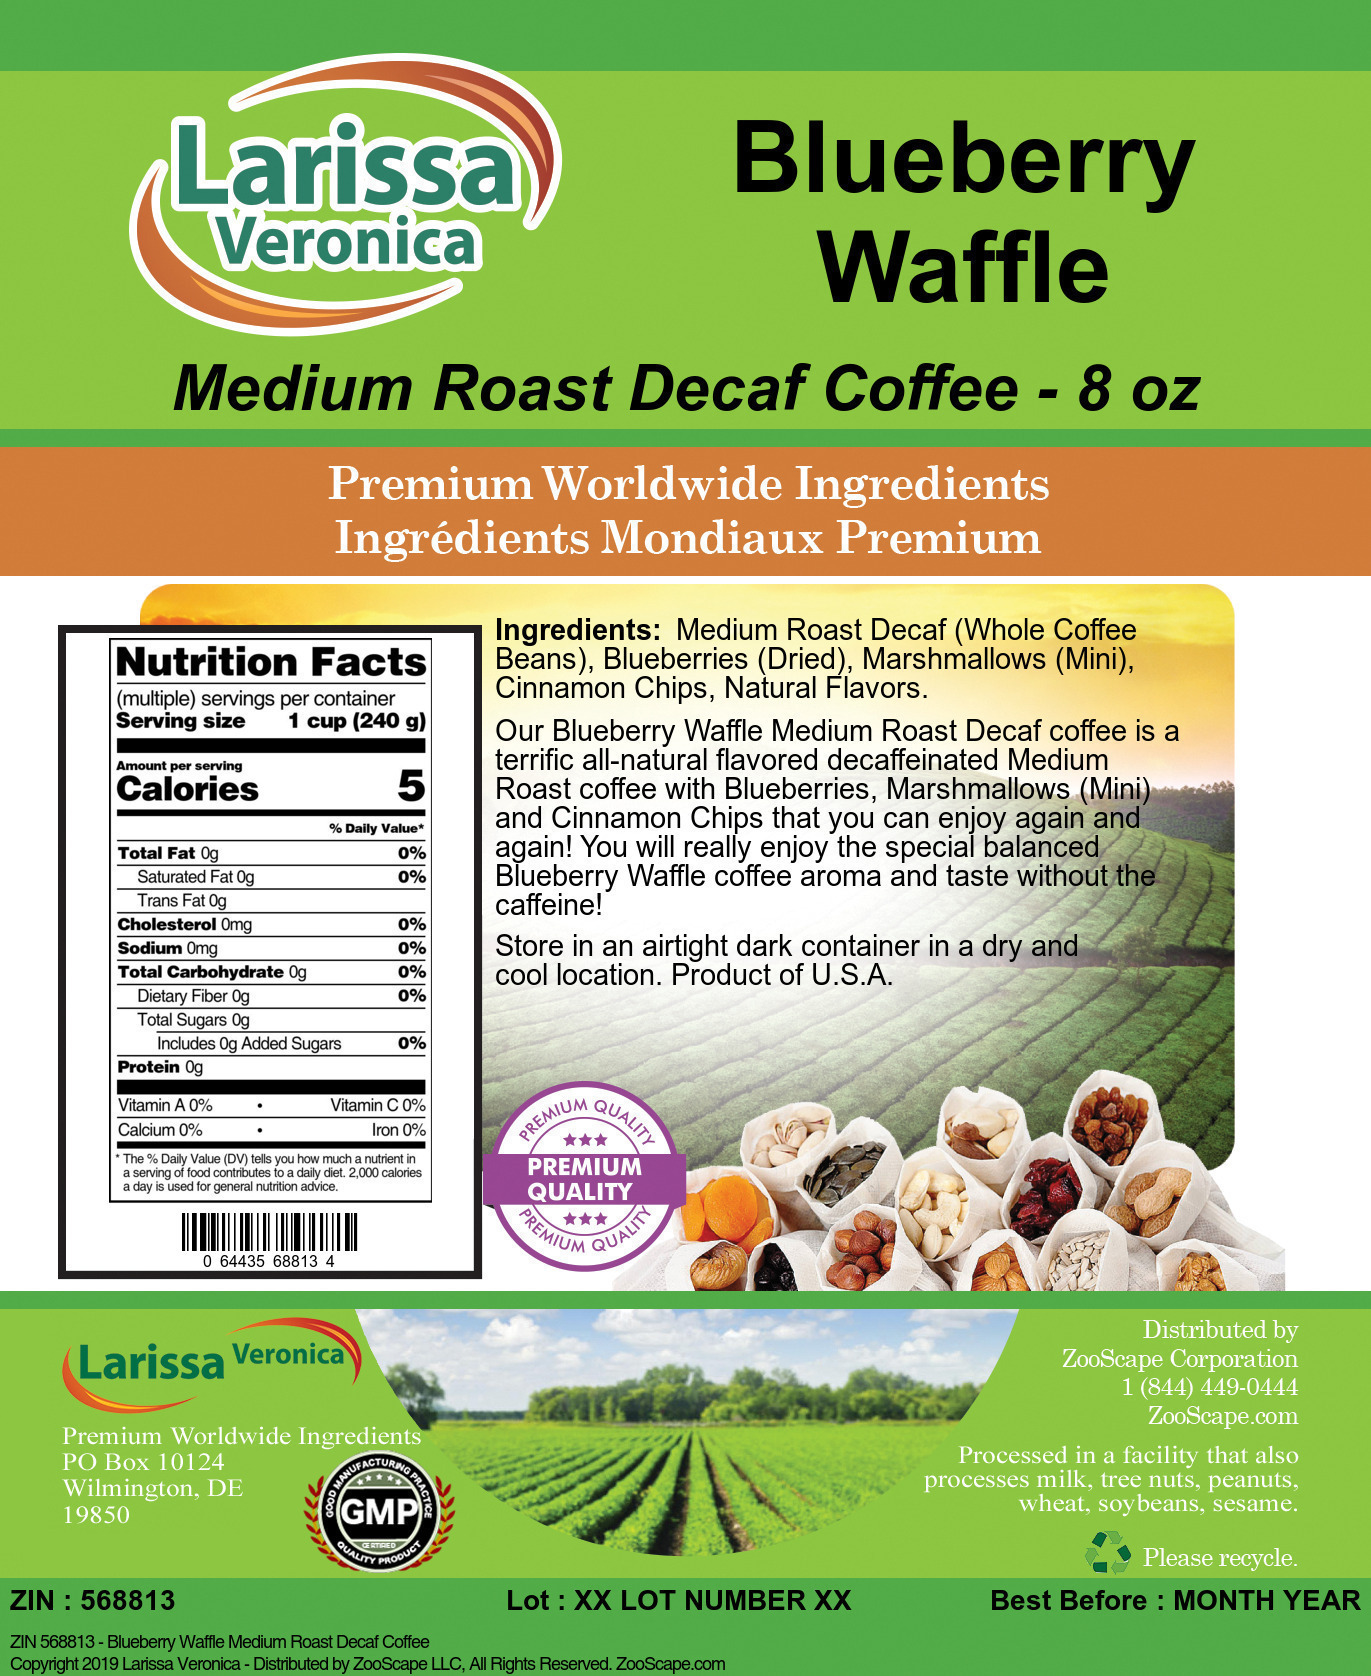 Blueberry Waffle Medium Roast Decaf Coffee - Label